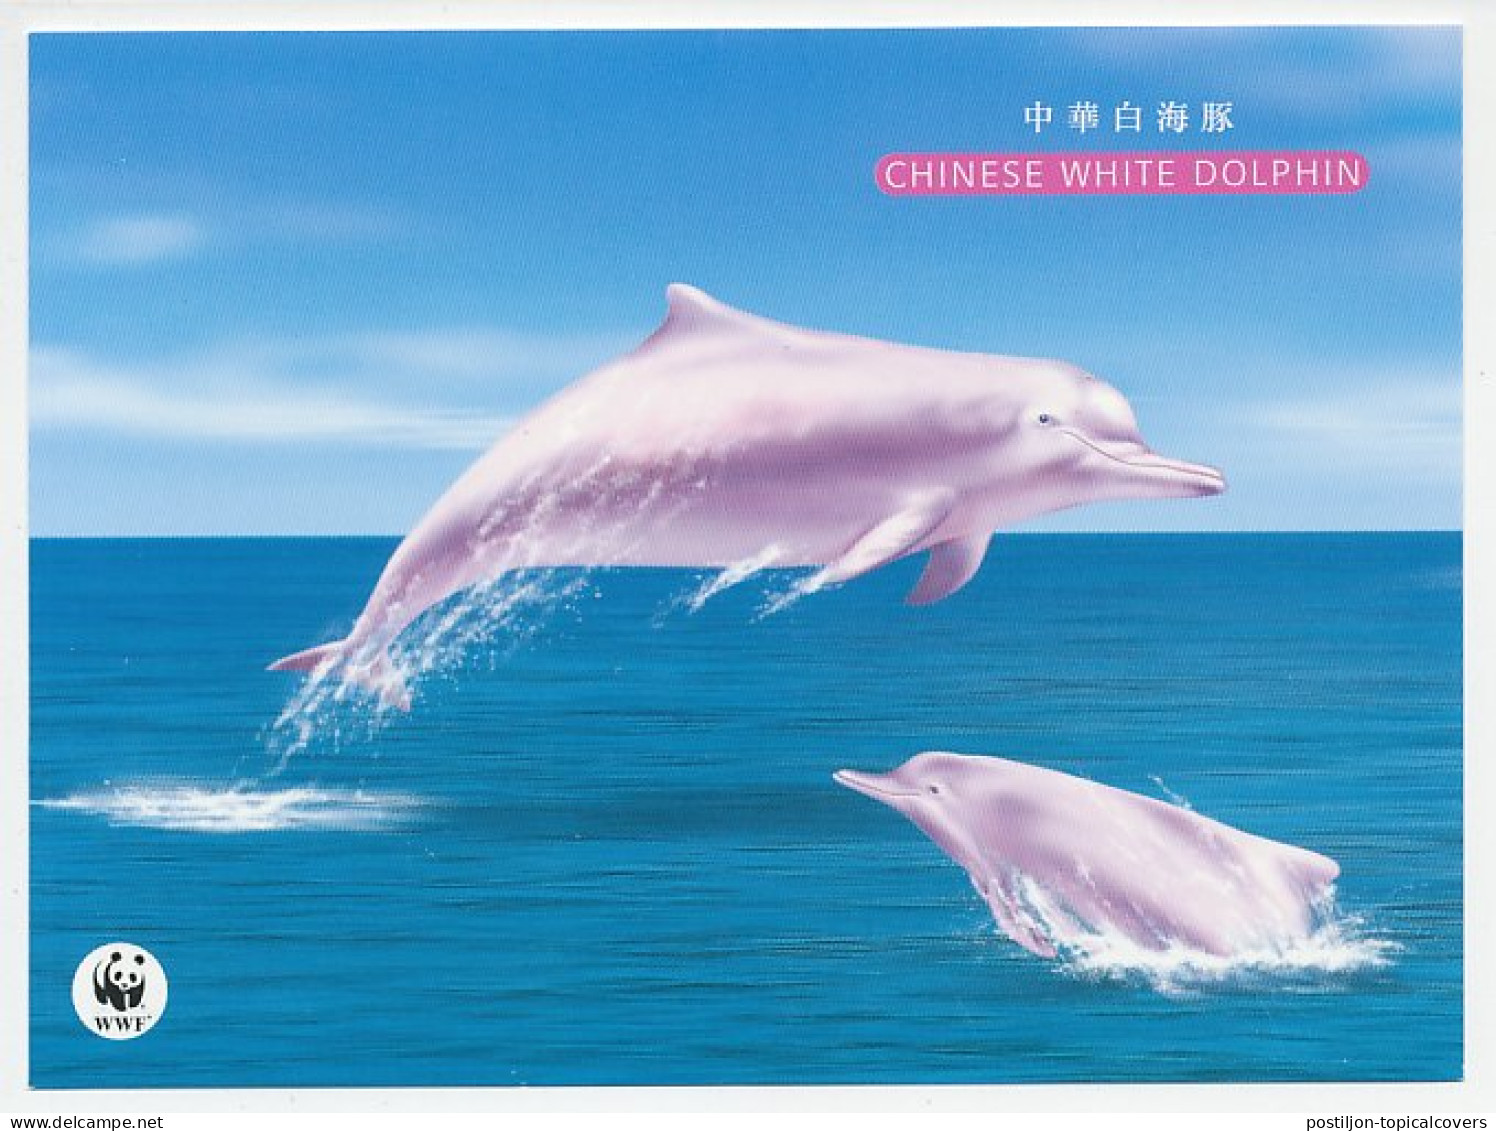 Postal Stationery HongKong Chinese White Dolphin - WWF - Marine Life